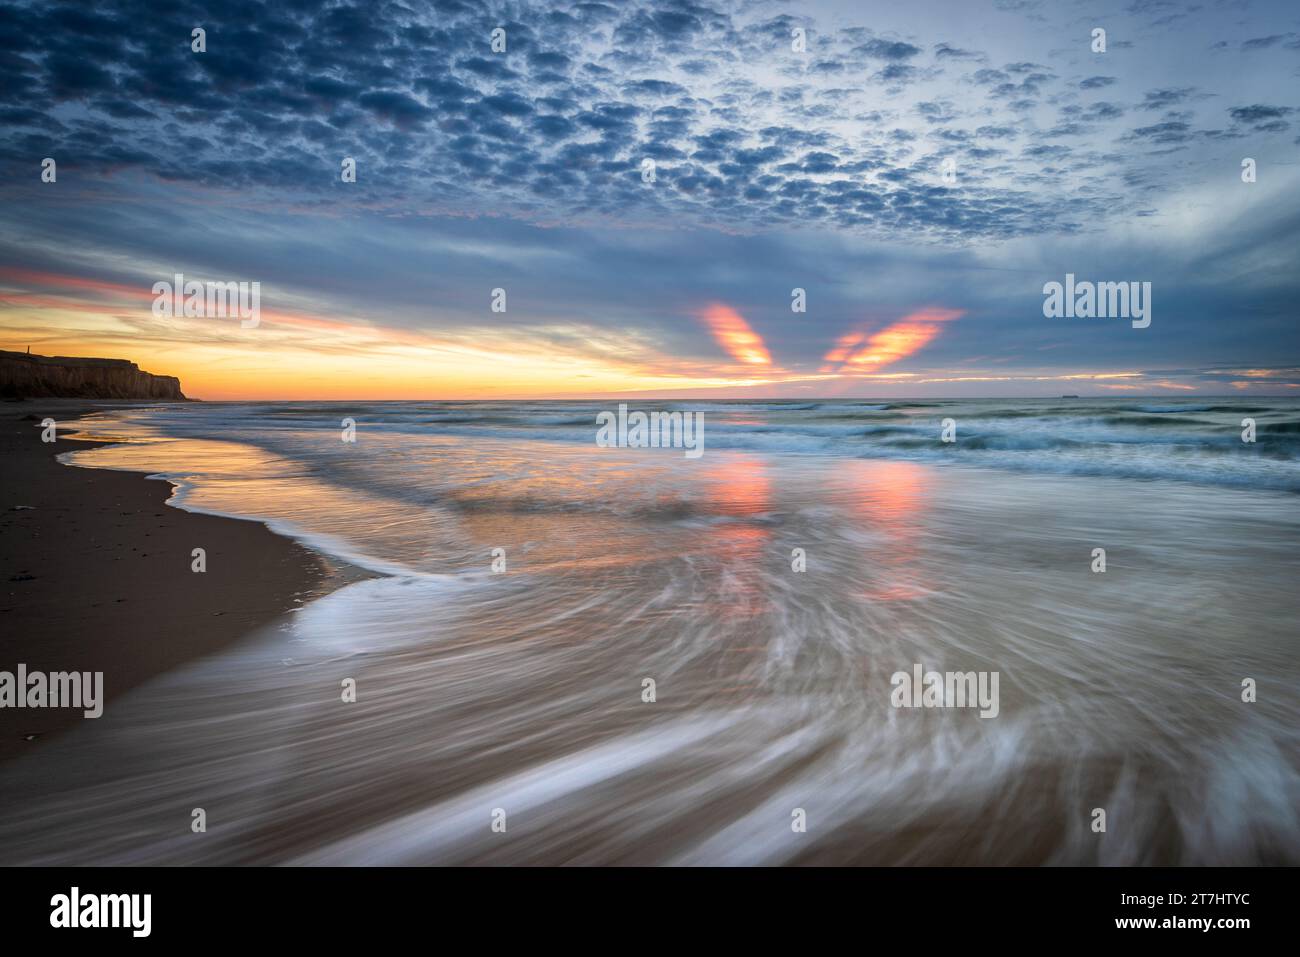 Coucher de soleil sur une plage de la Côte d'Opale. France, automne Stock Photo